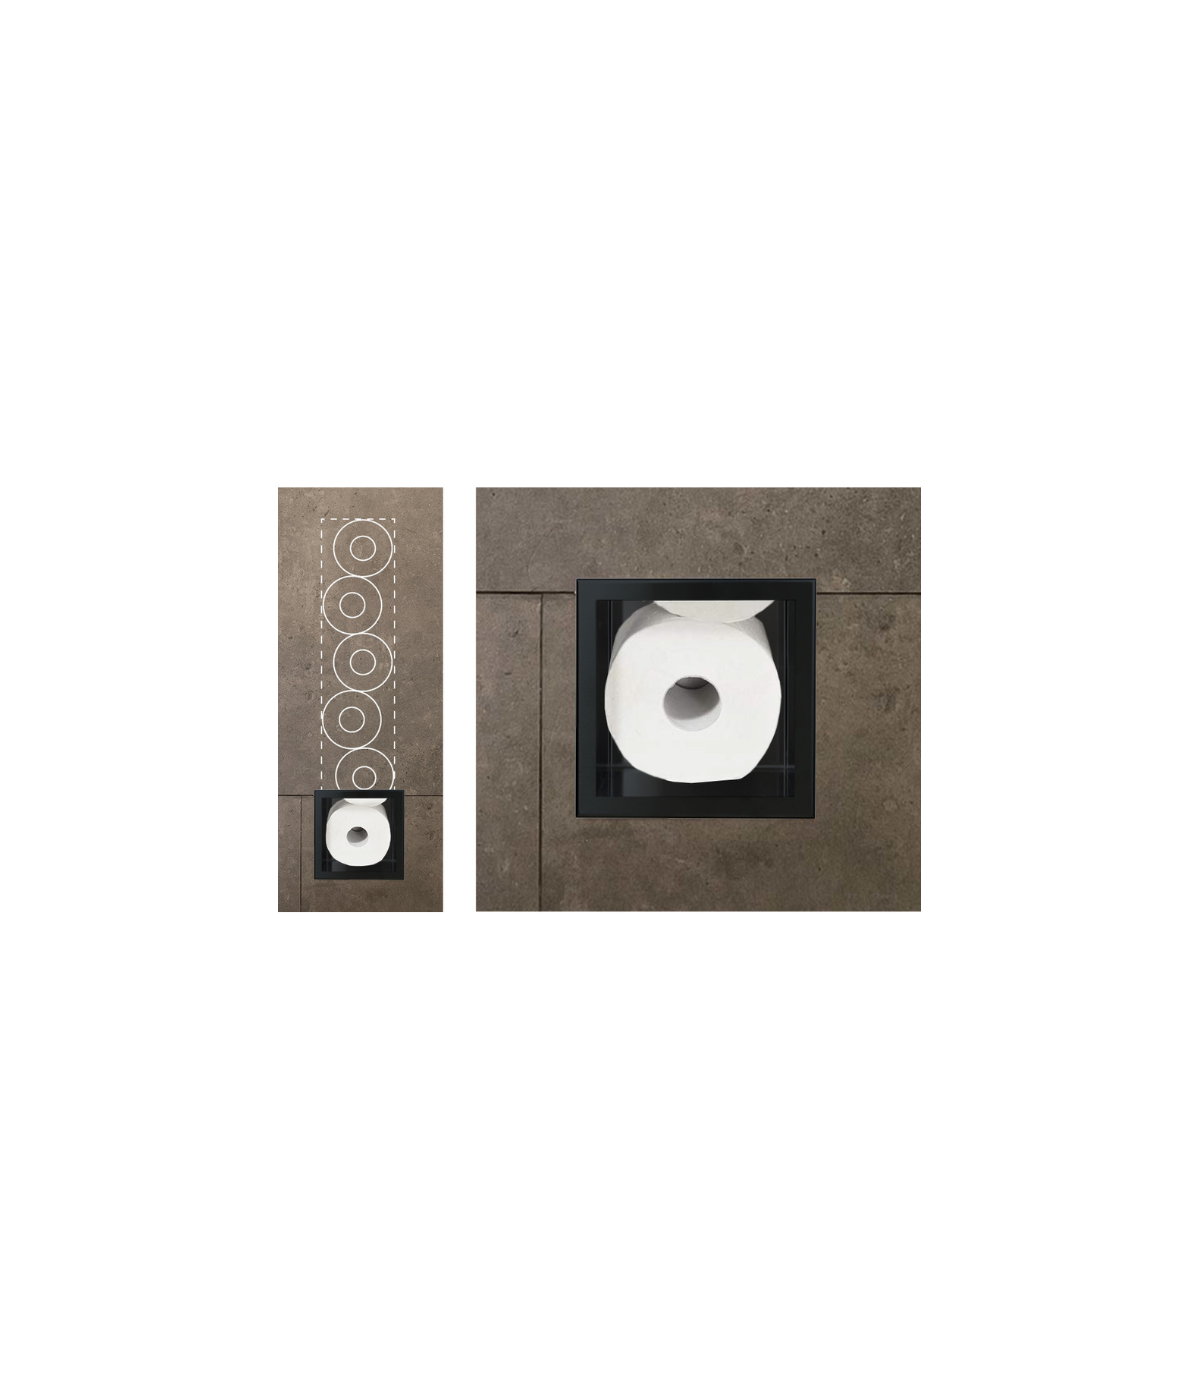 Unterputz Wandnische Toilettenpapieraufbewahrung WALL BOX PAPER 3 Schwarz